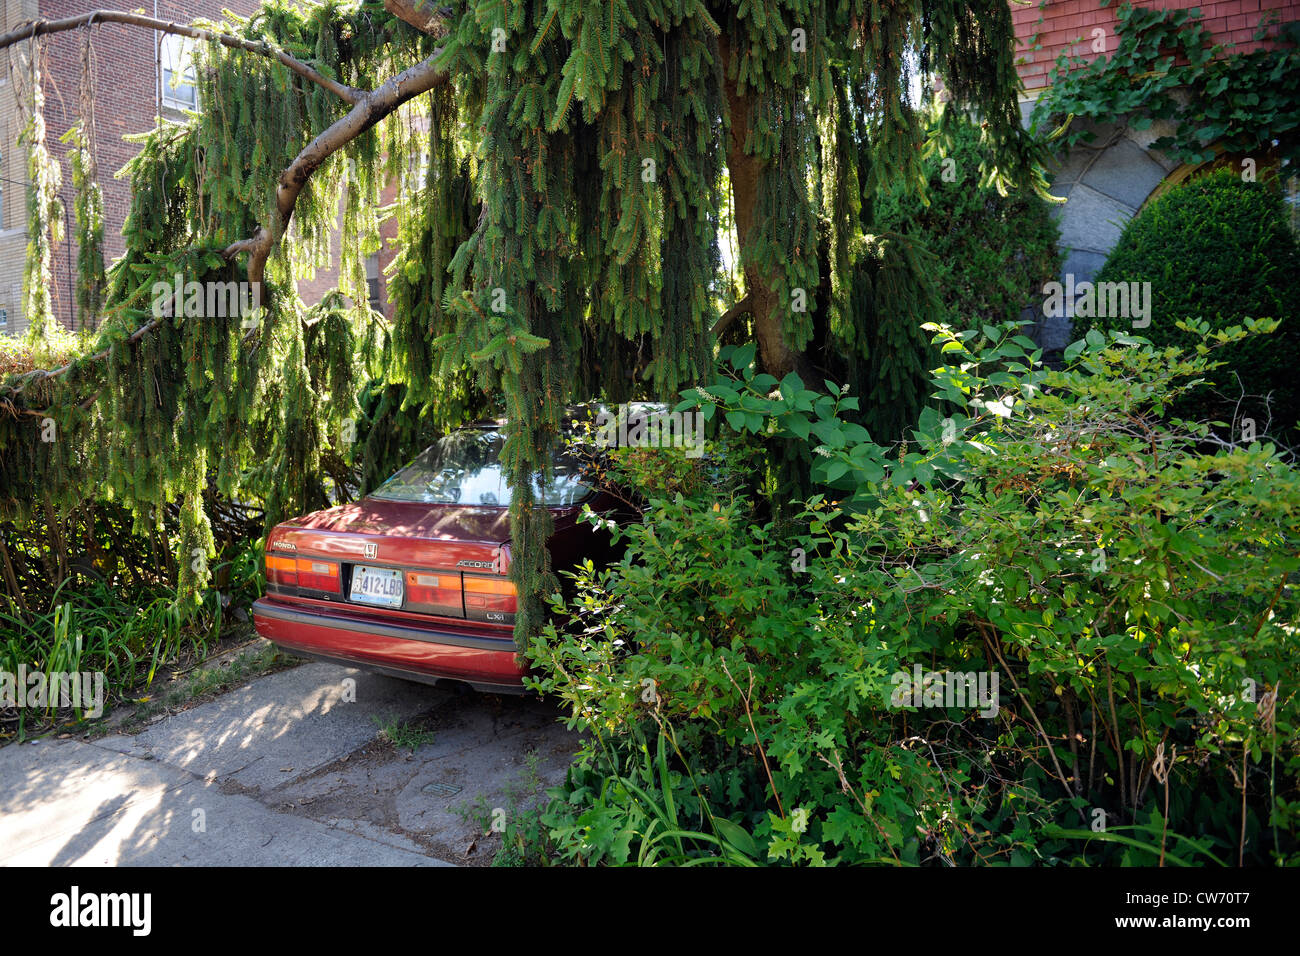 Car in overgrown parking spot. East Rock neighborhood. New Haven, CT. Stock Photo